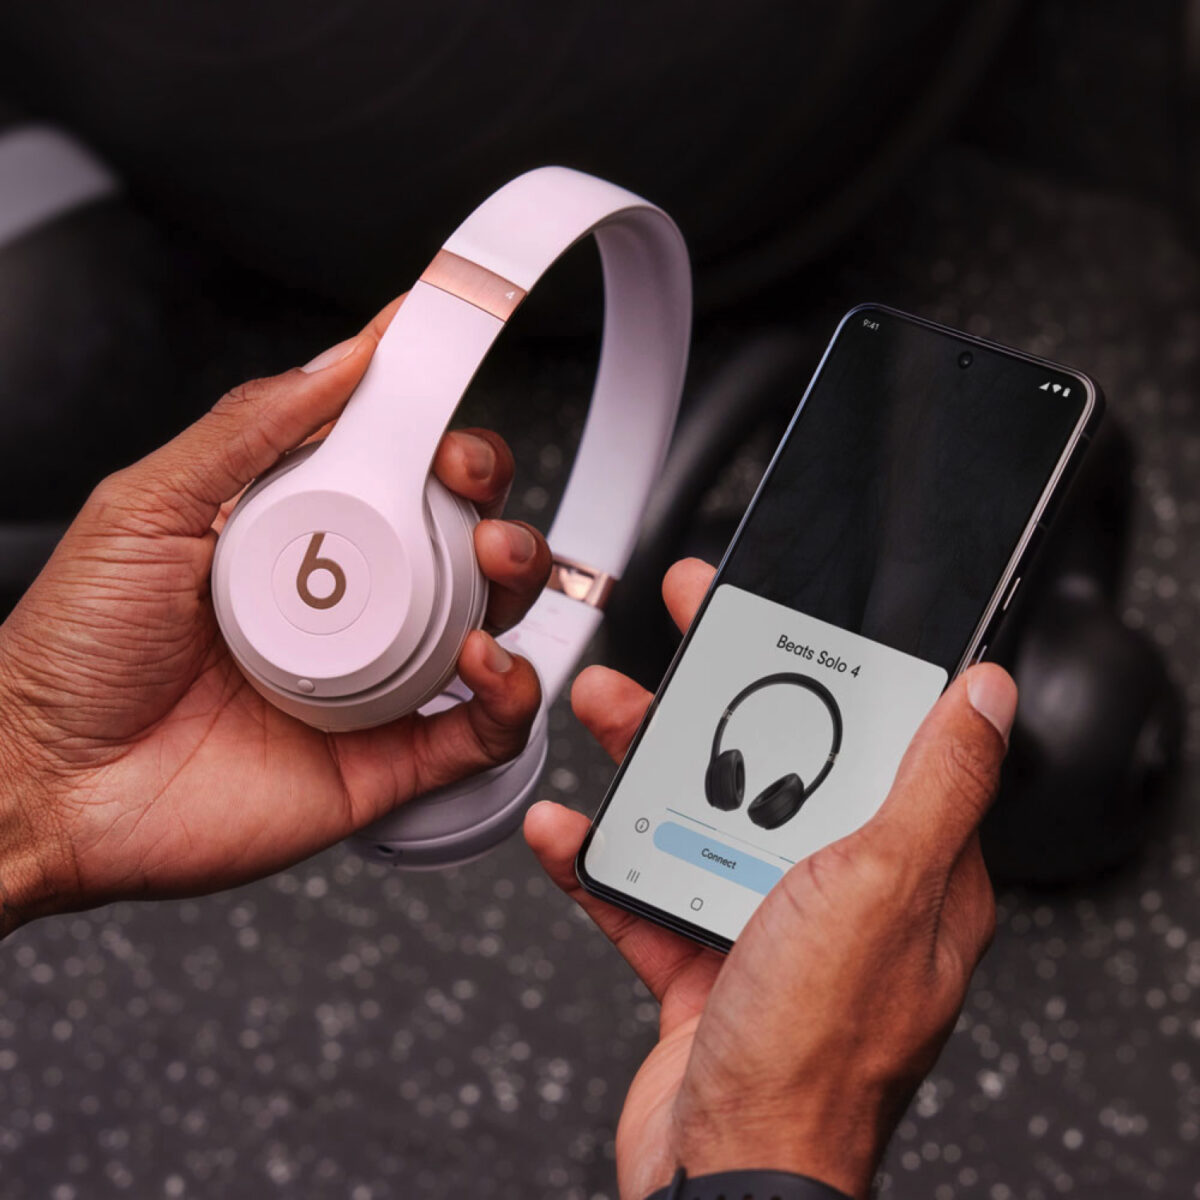 Beats Solo 4 annunciate con acustica migliorata e più batteria